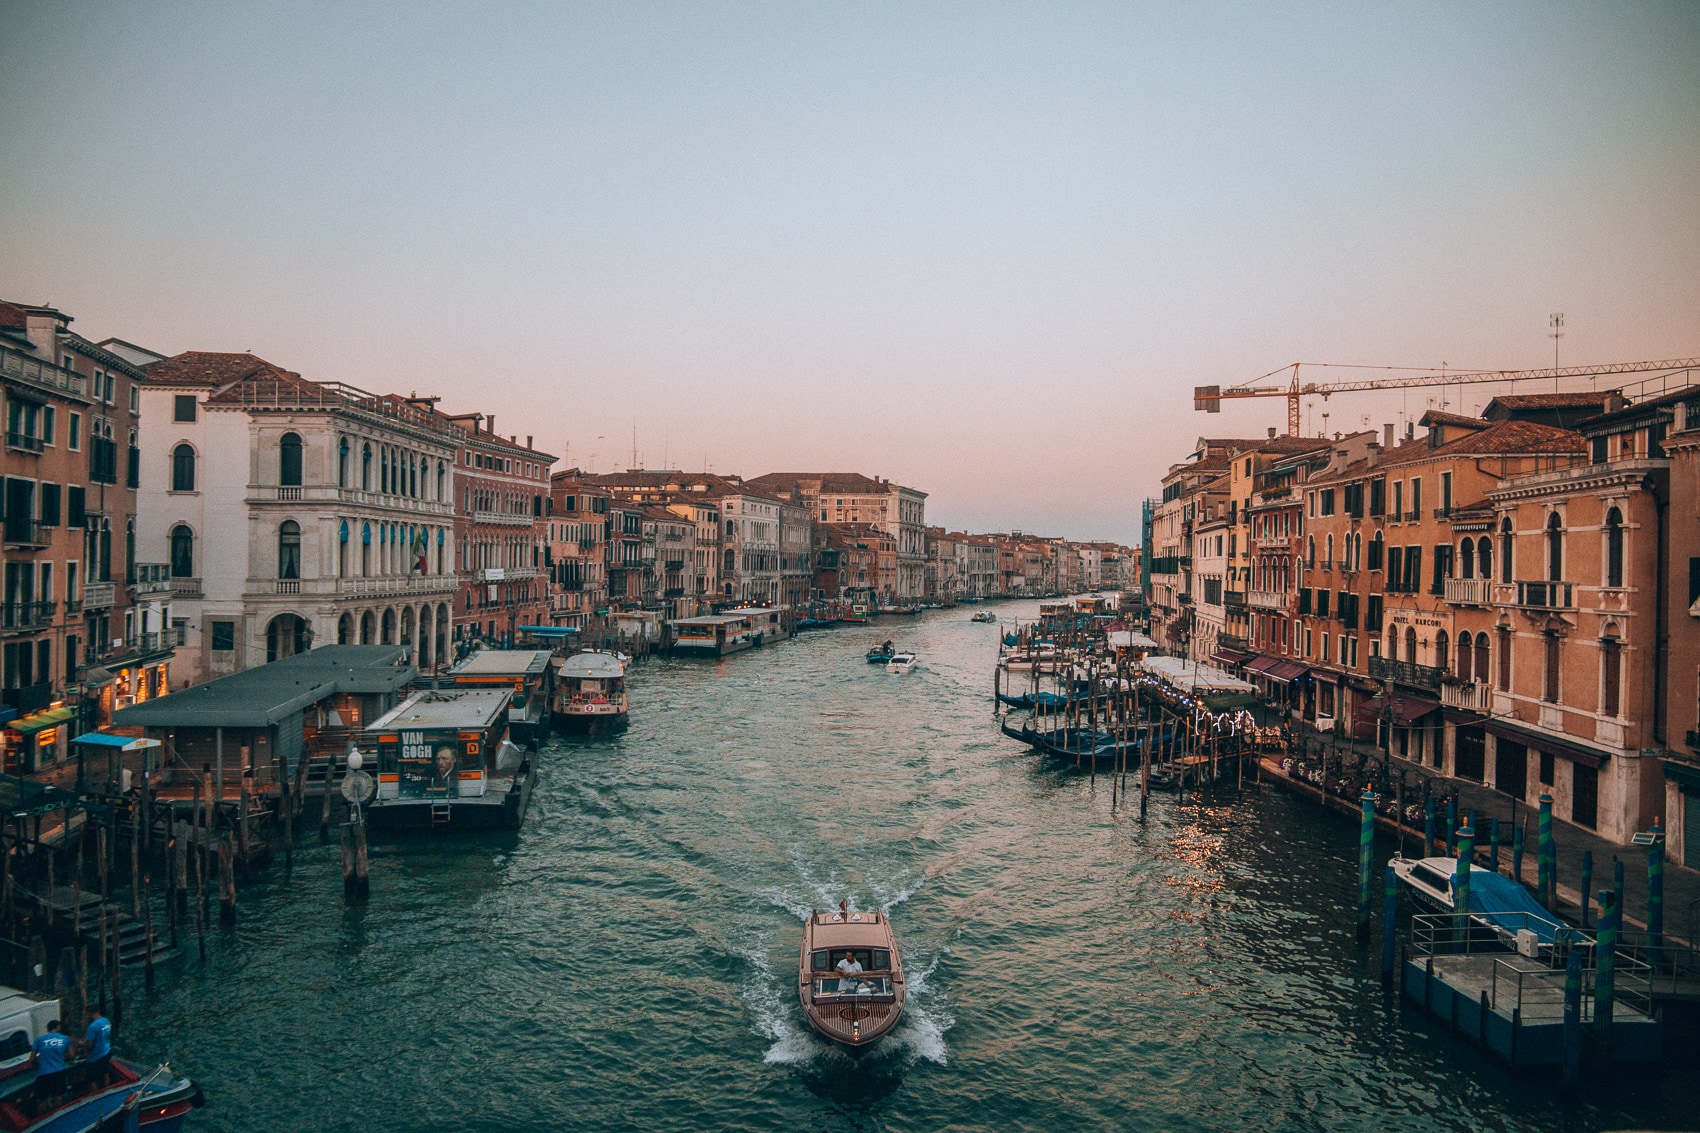 Die Lagunenstadt Venedig 1986 und 2018 - Ein Fototagebuch